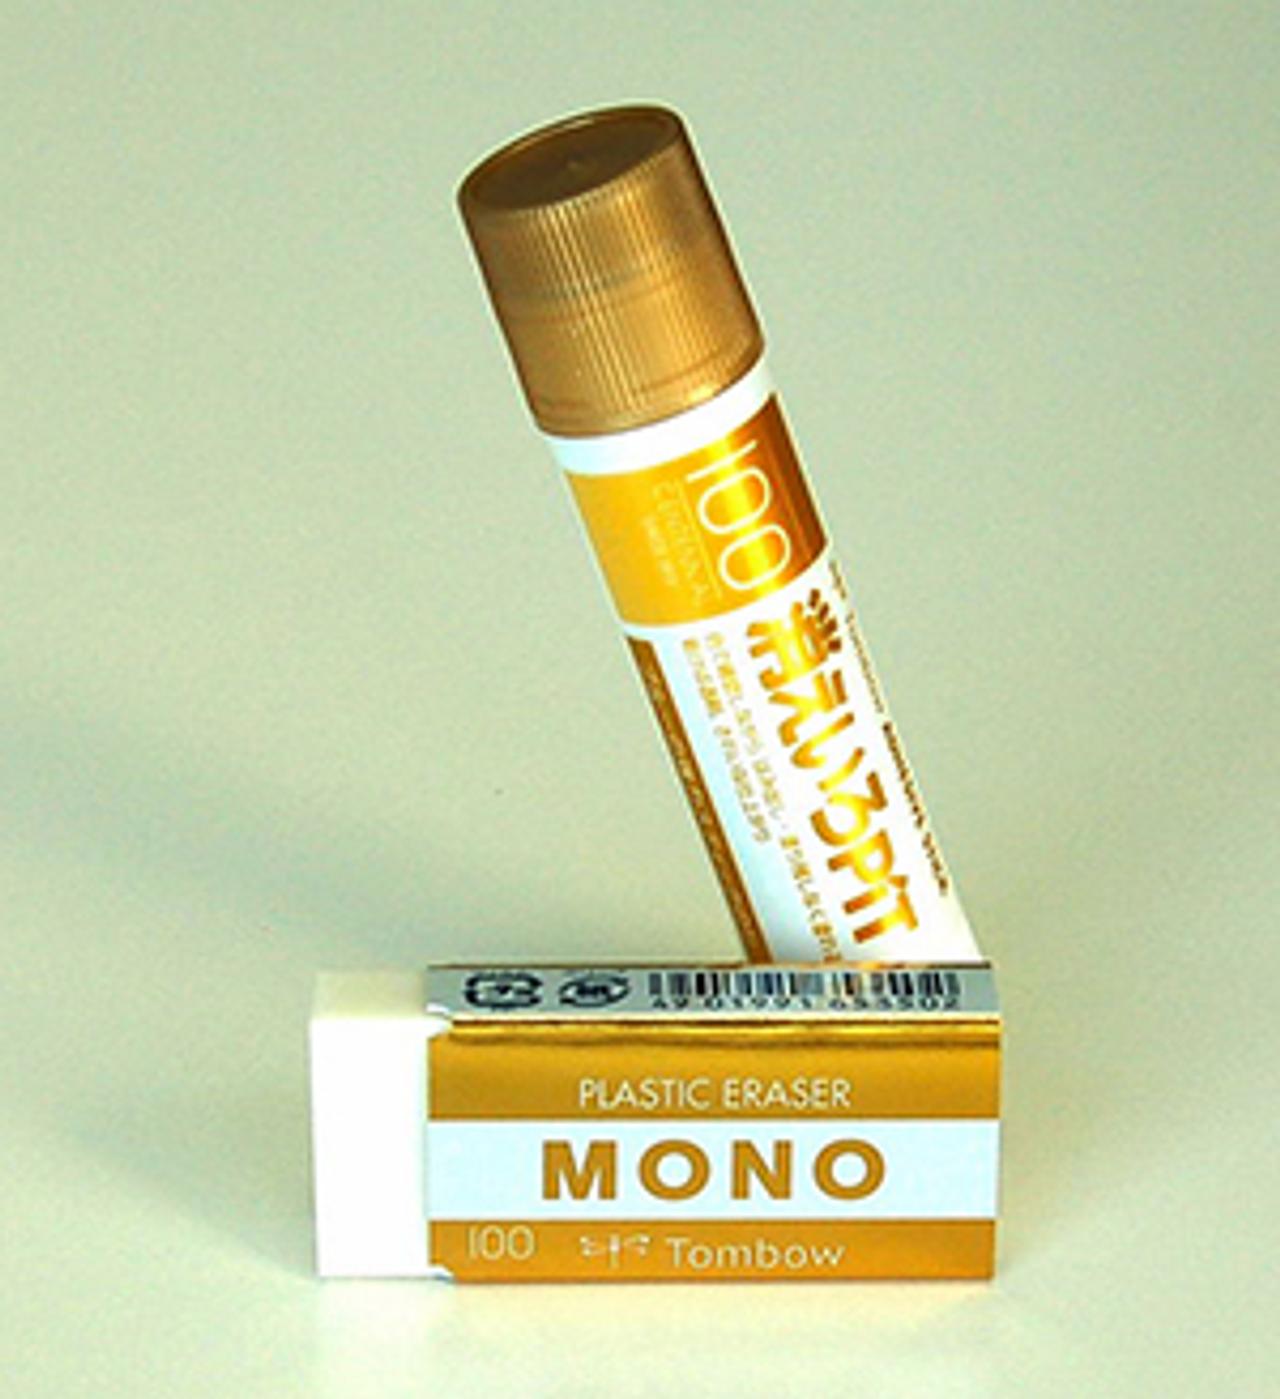 ゴールドのMONO消しゴム！ トンボ鉛筆創立100周年でカラフルなMONO消しゴムと消えいろPiTが登場 | ギズモード・ジャパン